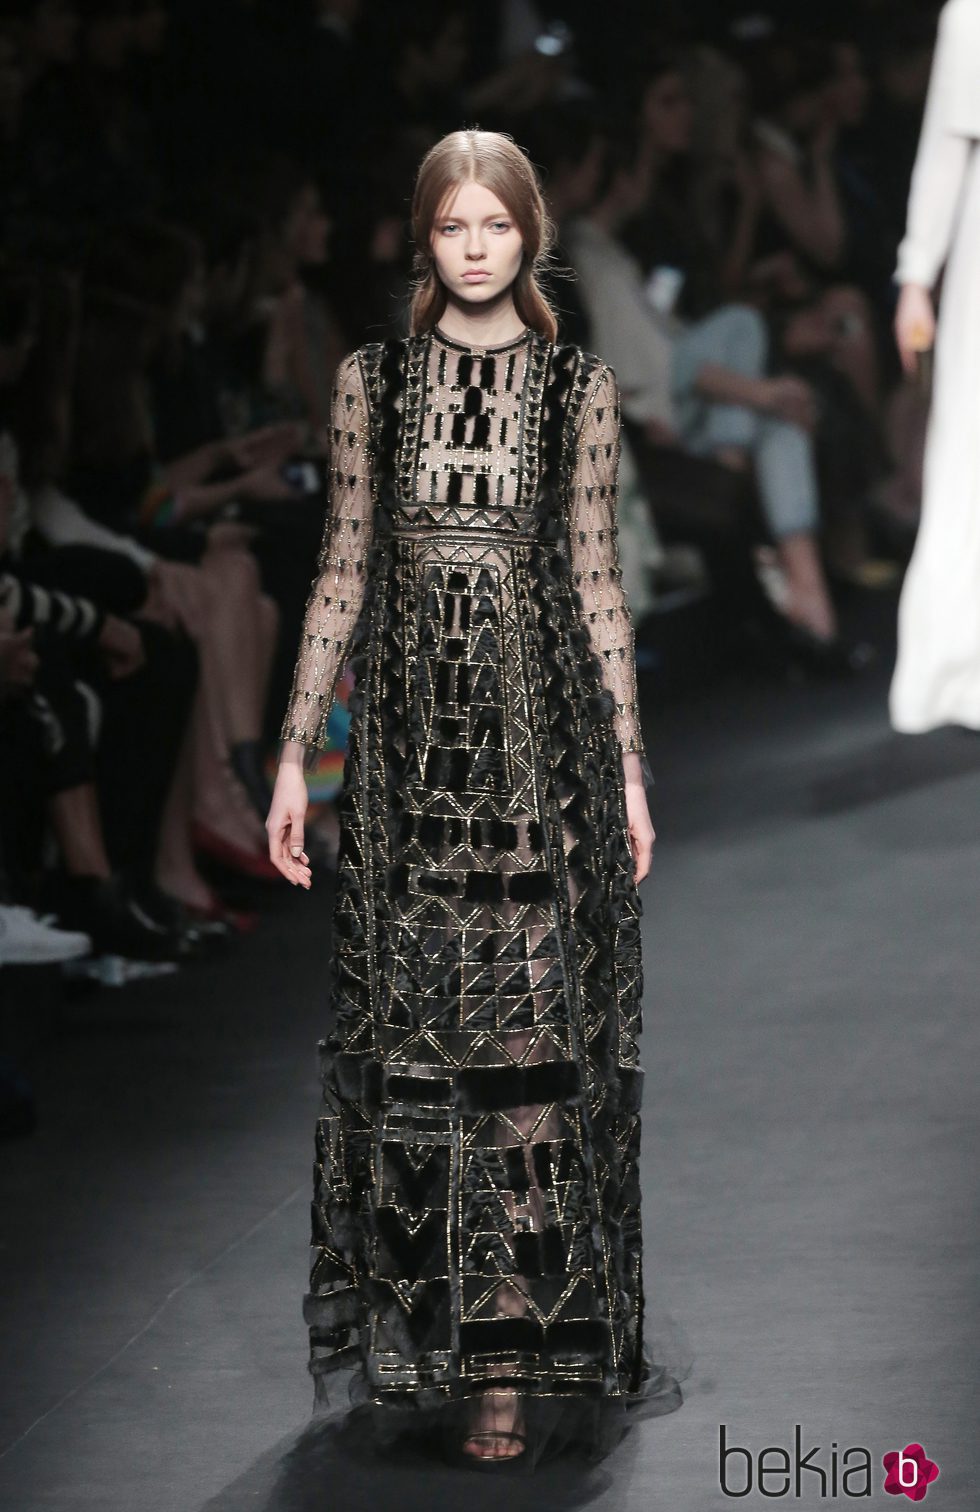 Vestido negro con terciopelo de la colección otoño/invierno 2015 de Valentino en Paris Fashion Week